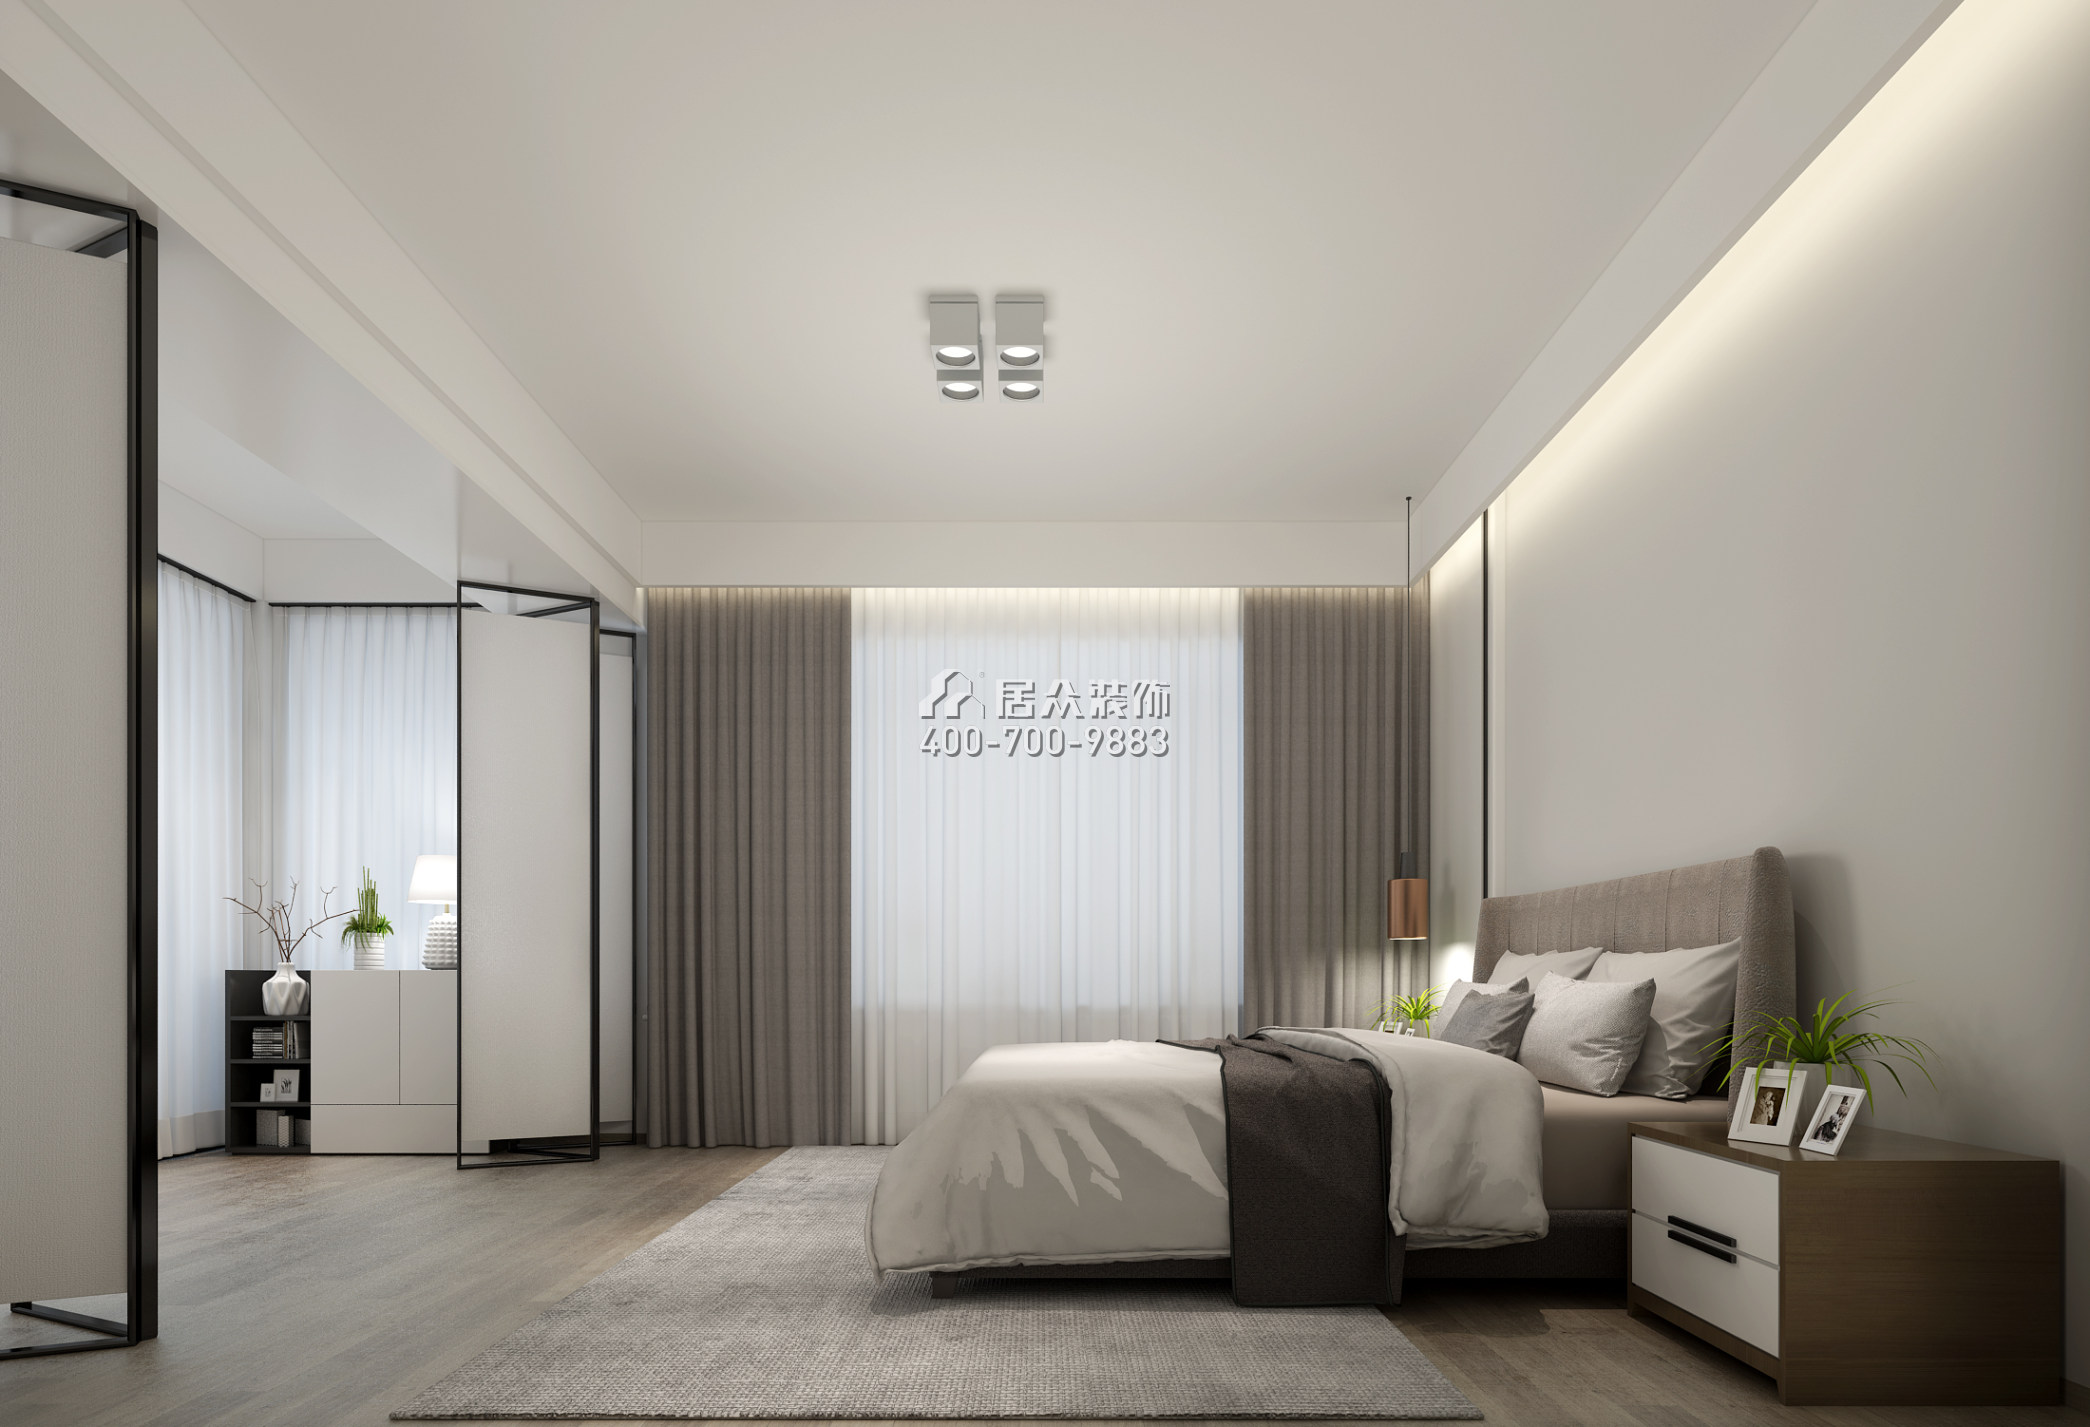 華發山莊191平方米現代簡約風格平層戶型臥室裝修效果圖